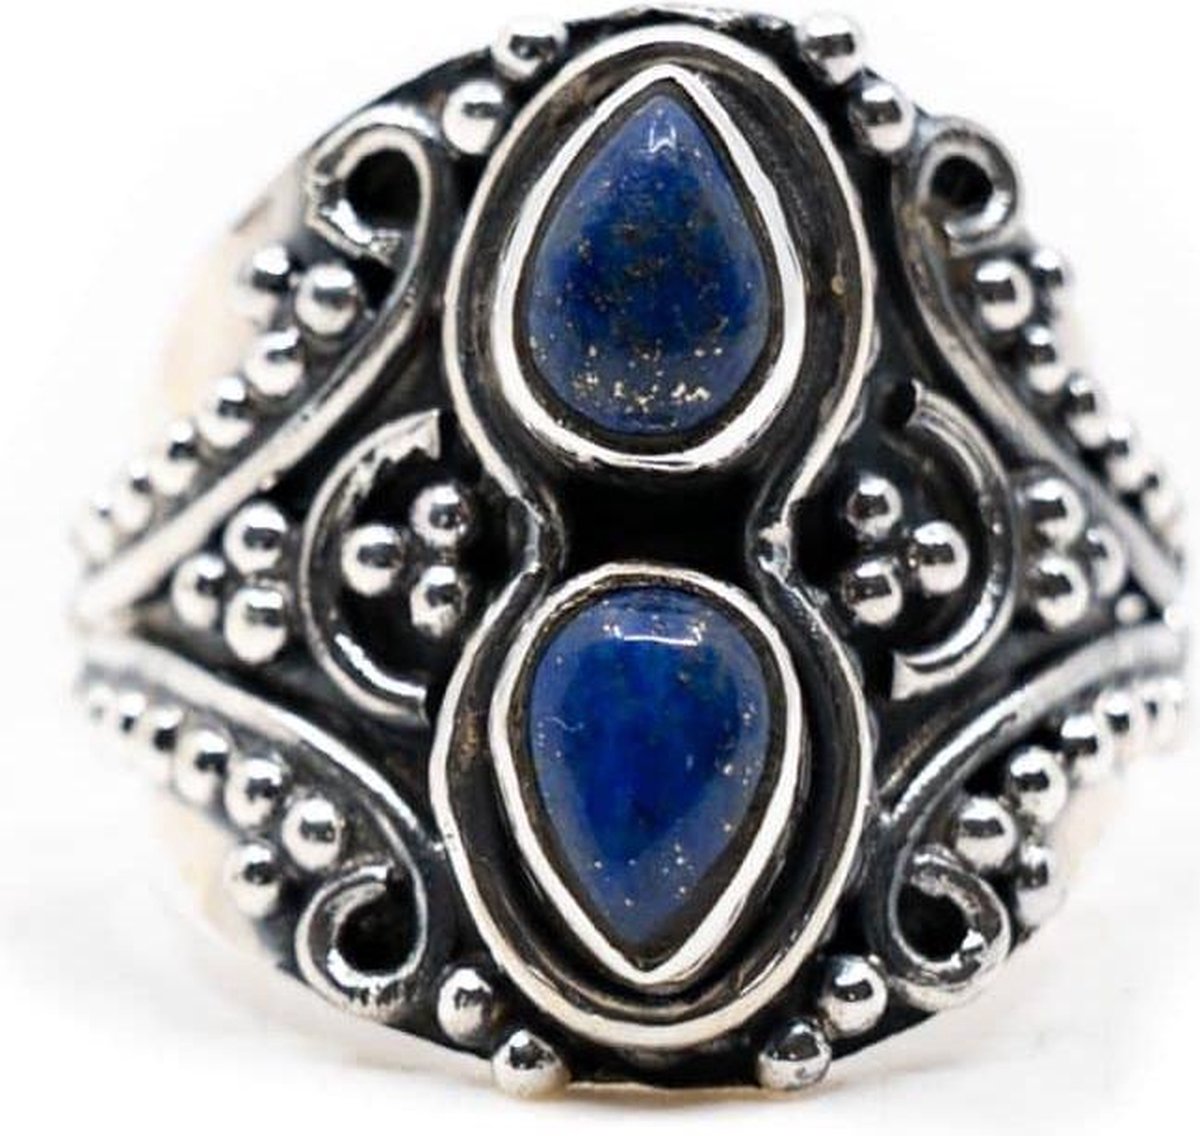 Edelsteen Ring Lapis Lazuli 925 Zilver “Vizrea” (Maat 17)